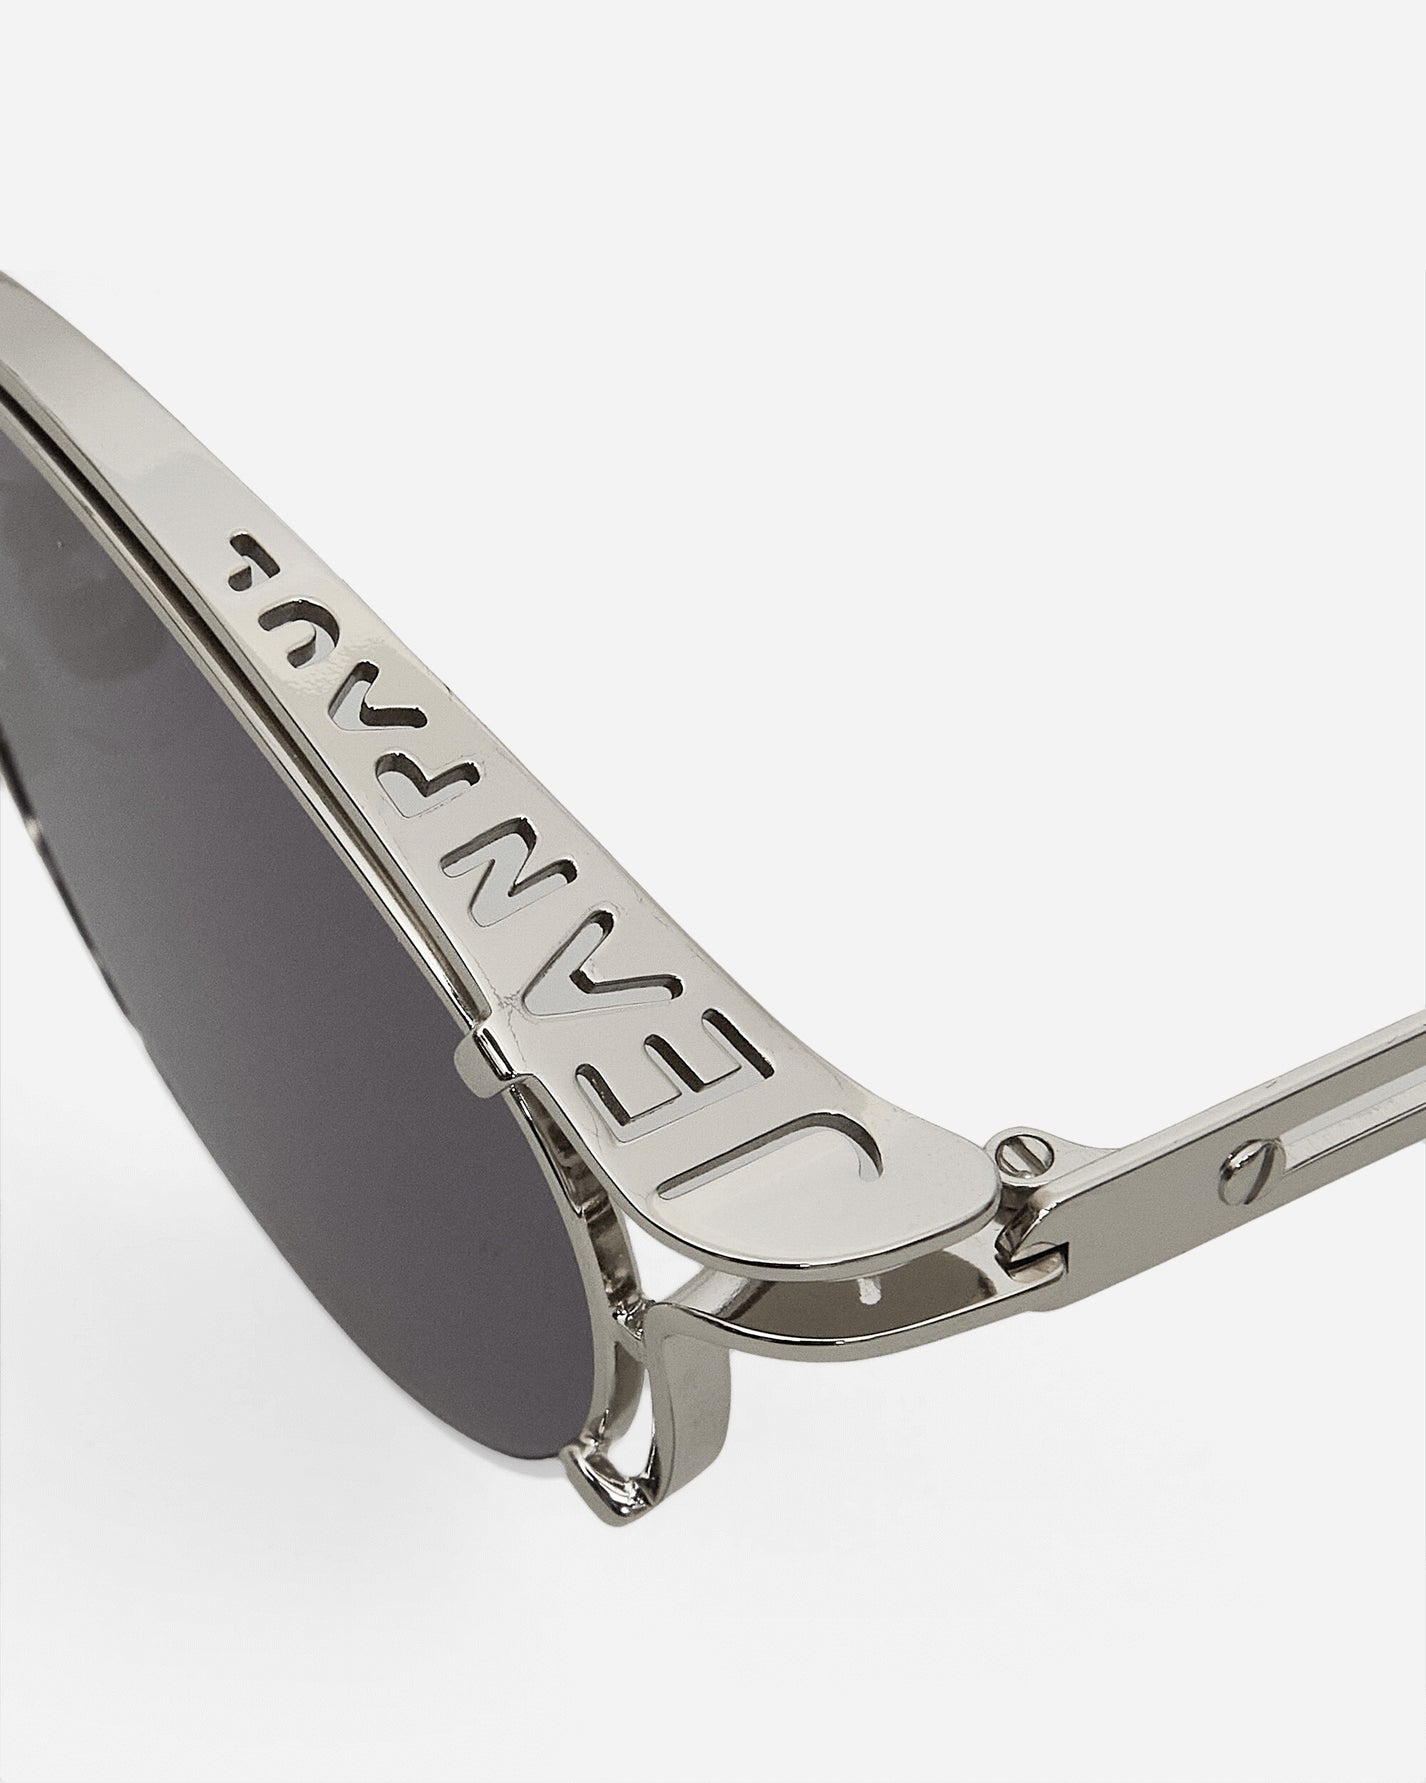 Jean Paul Gaultier Wmns Lunettes Sourcil Silver Eyewear Sunglasses LU009-X056 91